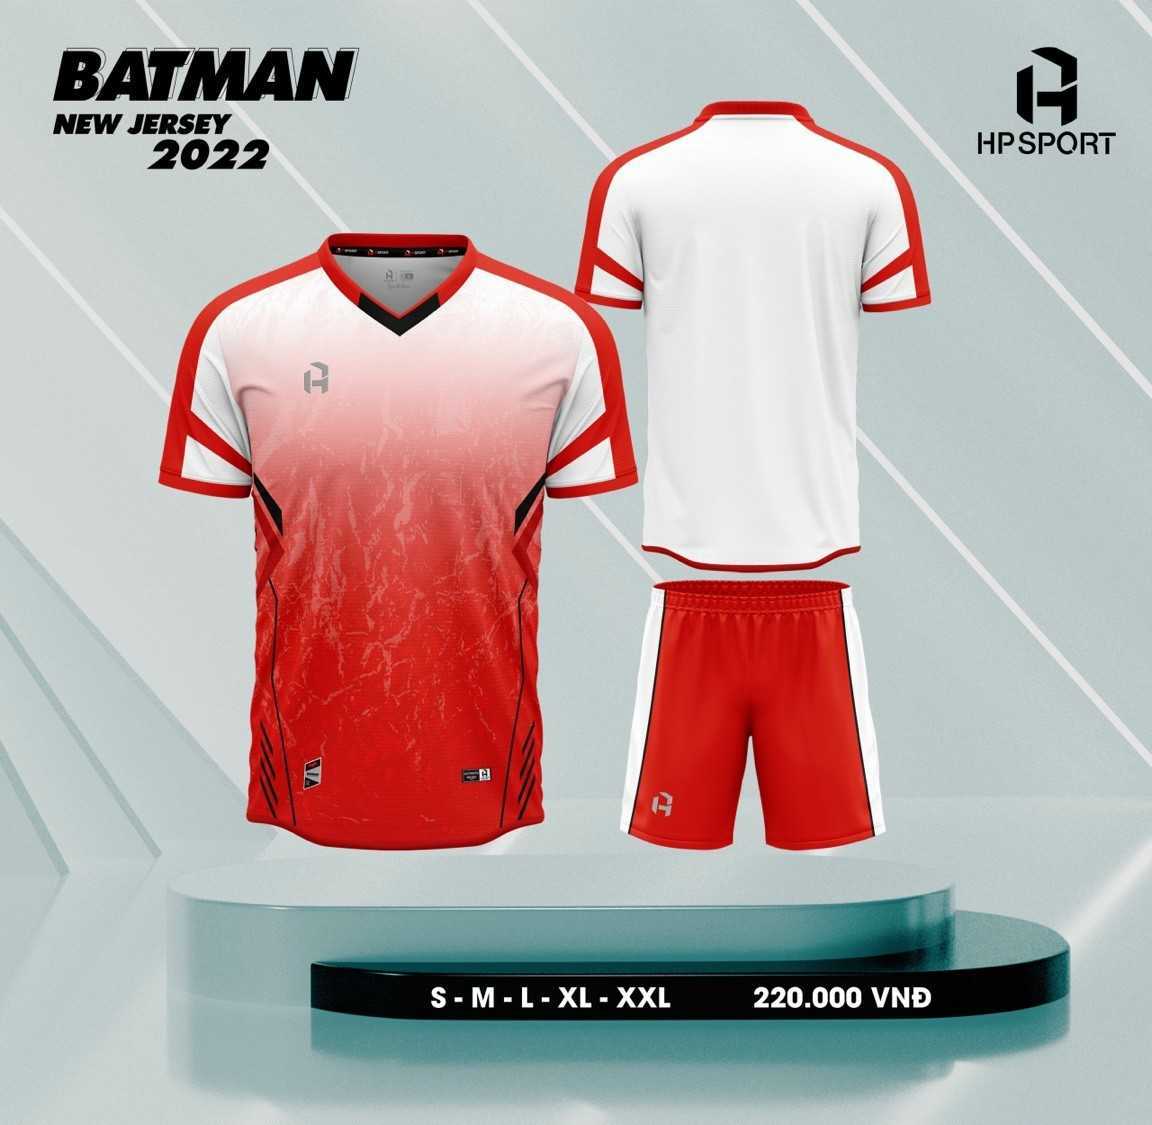 Bộ quần áo bóng đá không logo HP Sport Batman nhiều màu đỏ